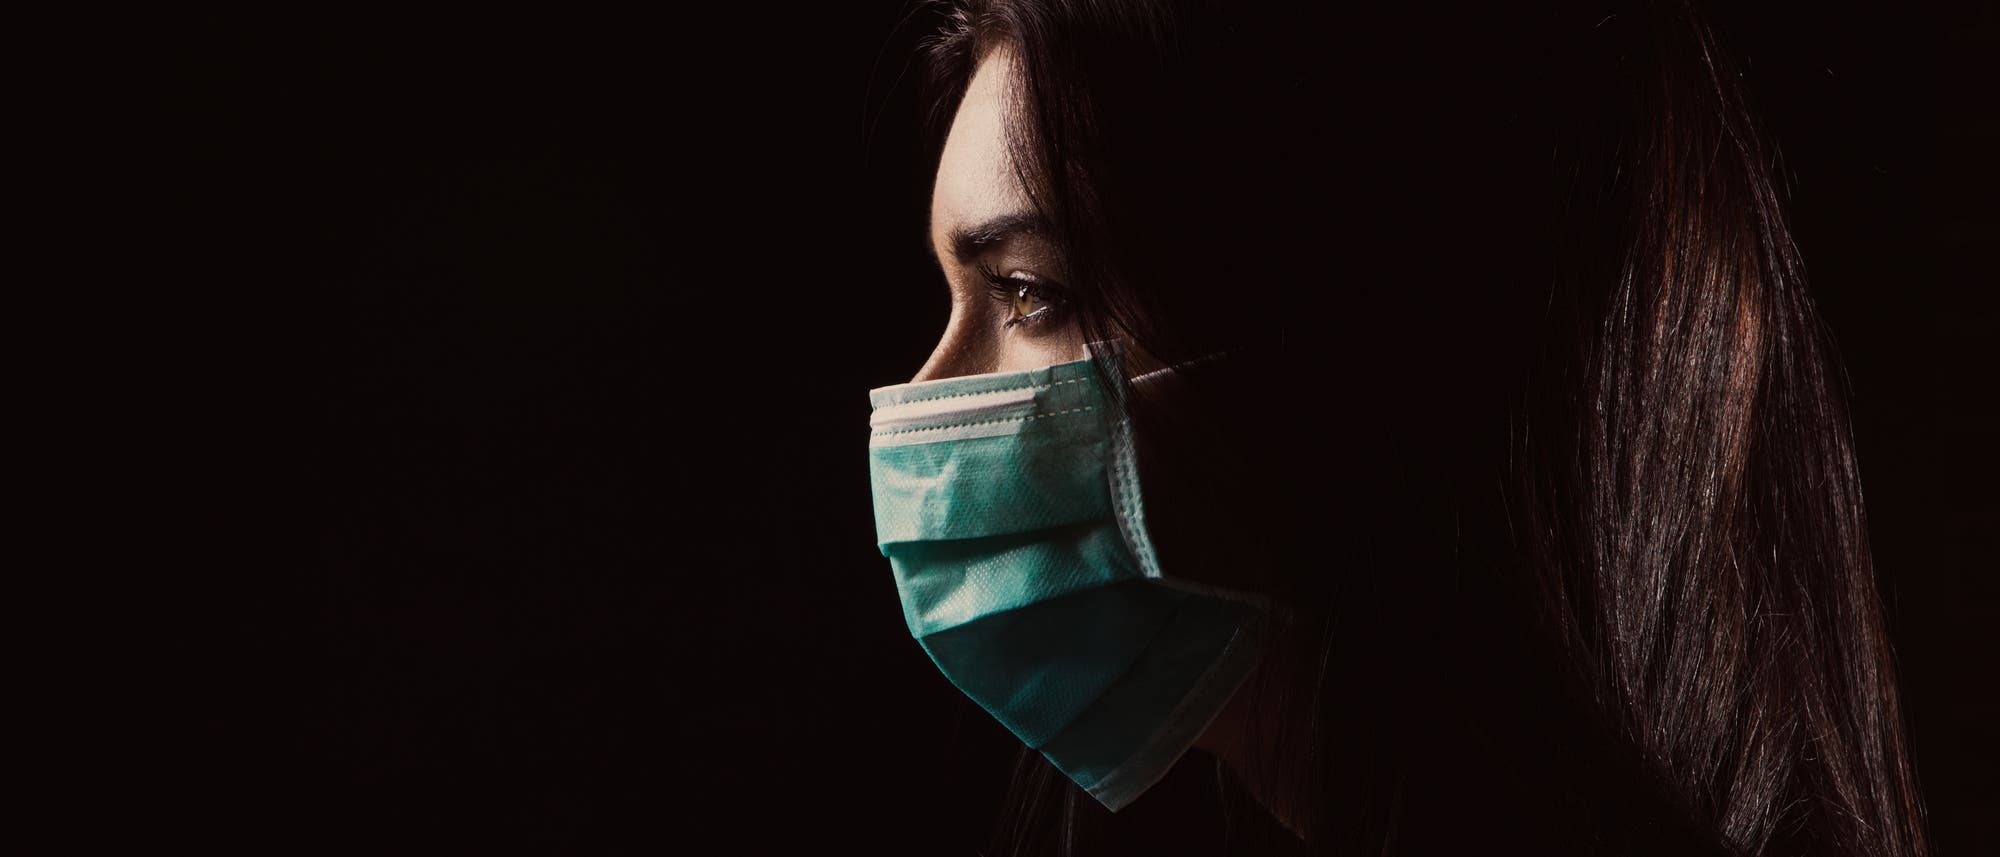 Frau mit medizinischer Mund-Nase-Maske im Profil vor dunklem Hintergrund.